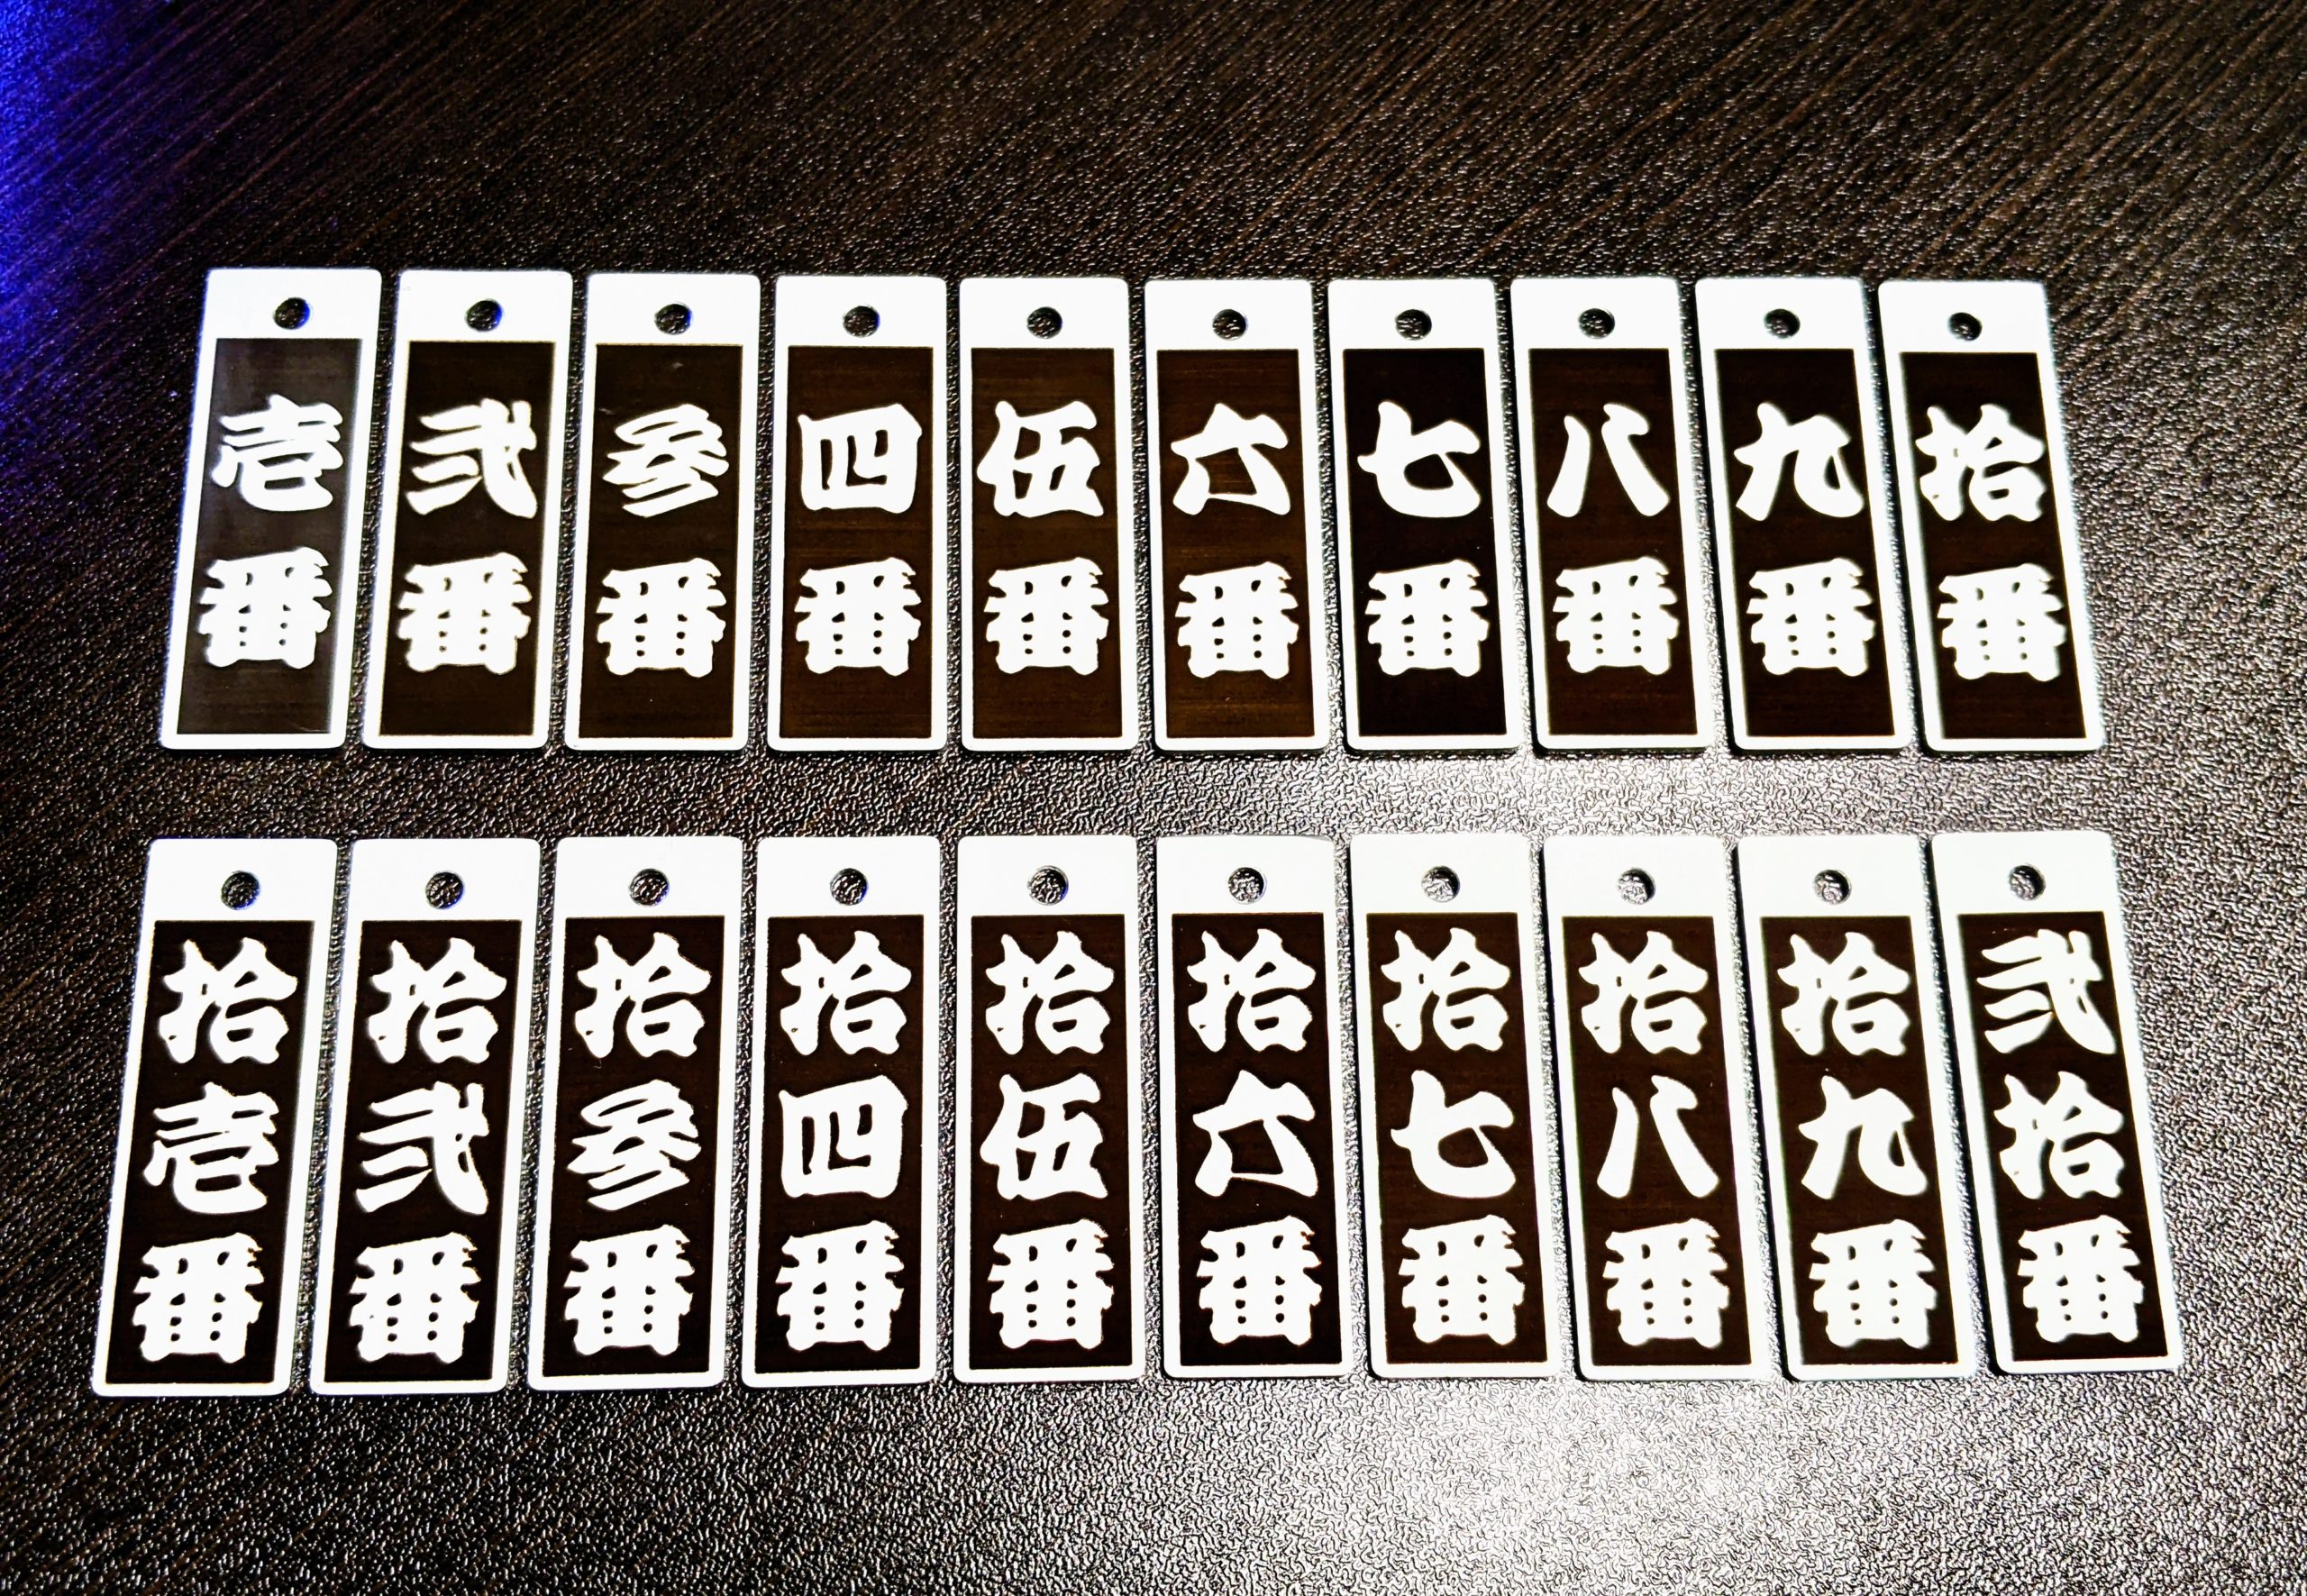 番号を江戸文字でレーザー彫刻したオリジナルボトルキーパーの製作